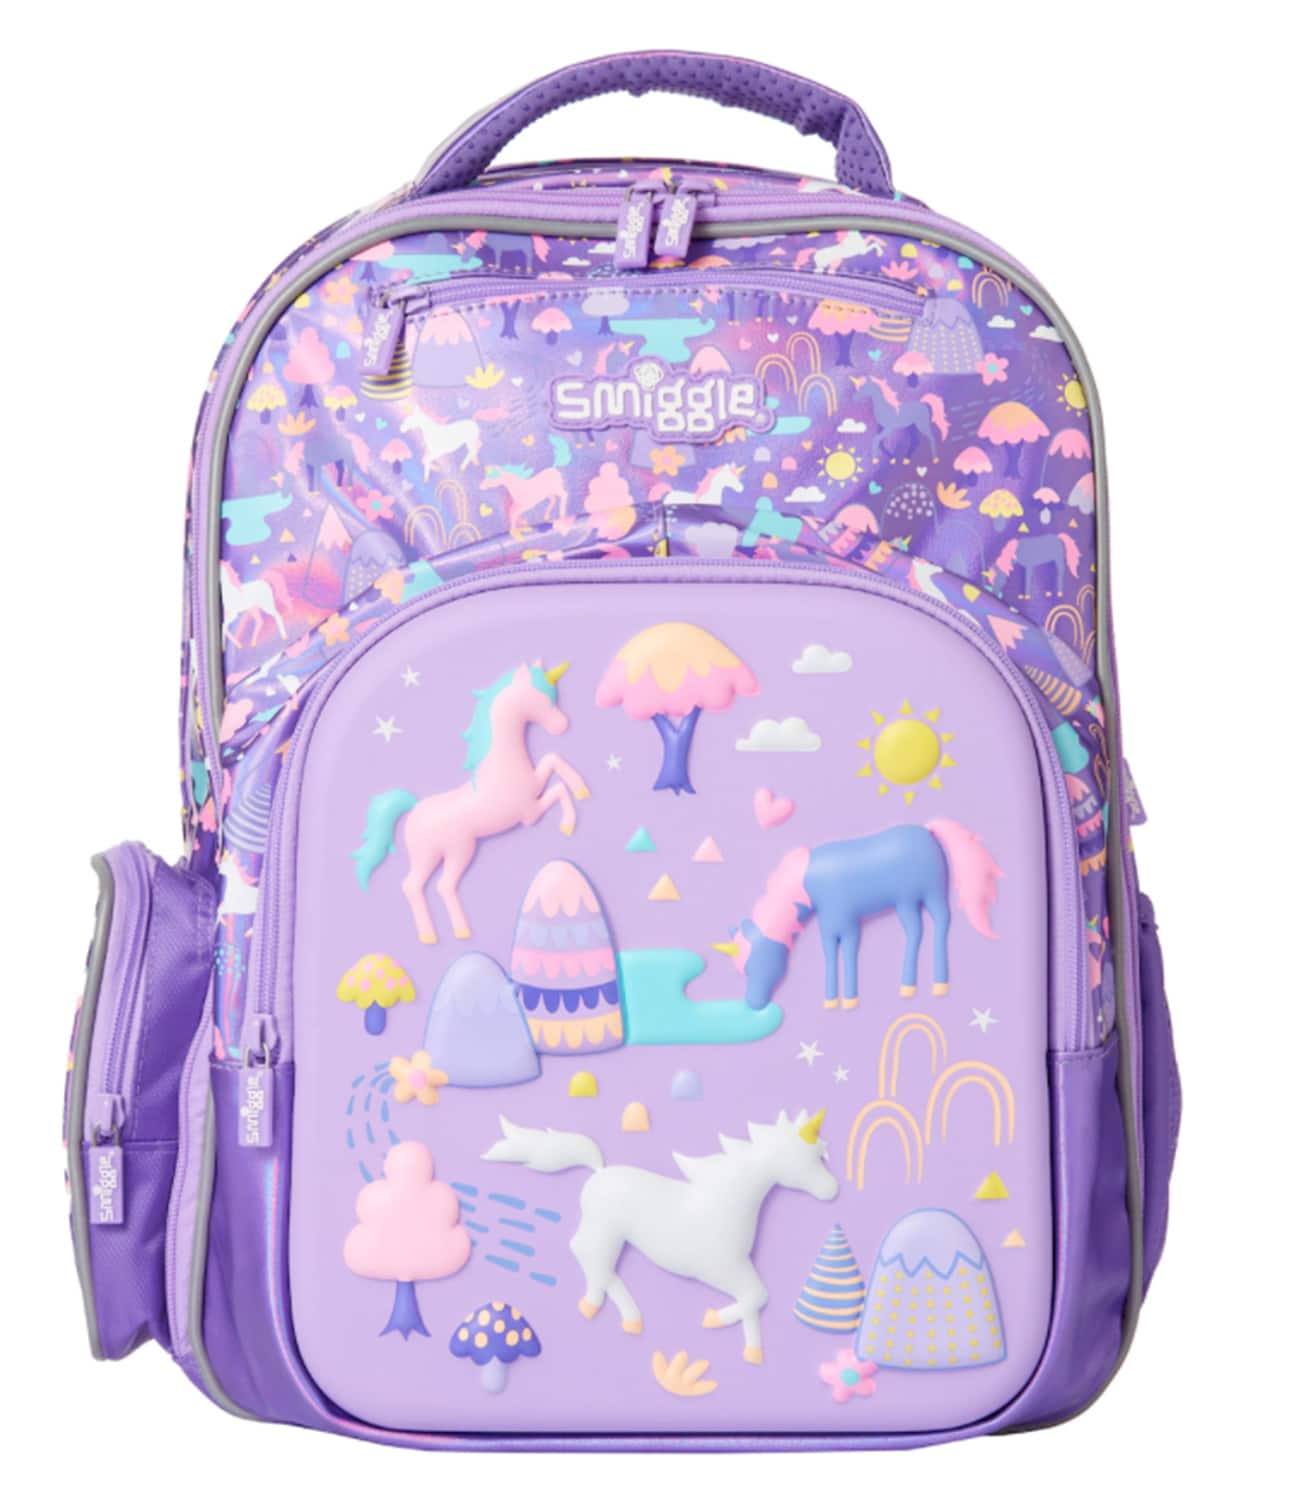 Beam Ultra Backpack